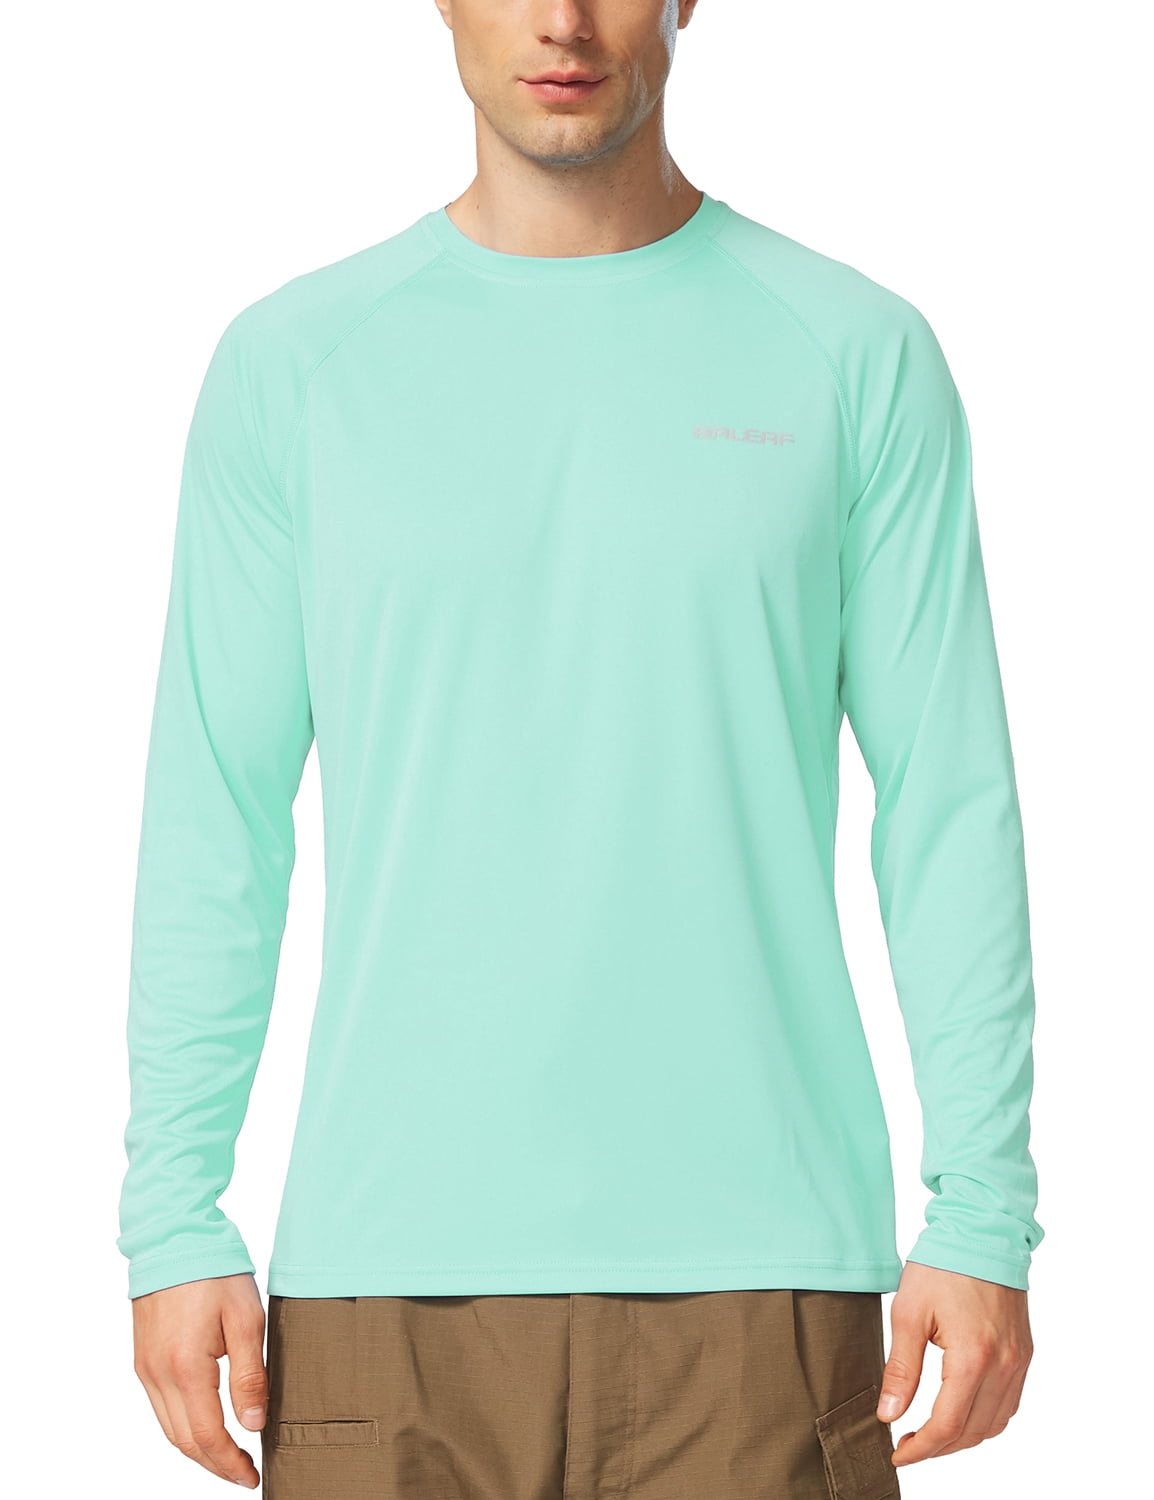 GetUSCart- BALEAF Women's UPF 50+ Sun Protection T-Shirt SPF Long/Short  Sleeve Dri Fit Lightweight Shirt Outdoor Hiking Charcoal Gray Size XL